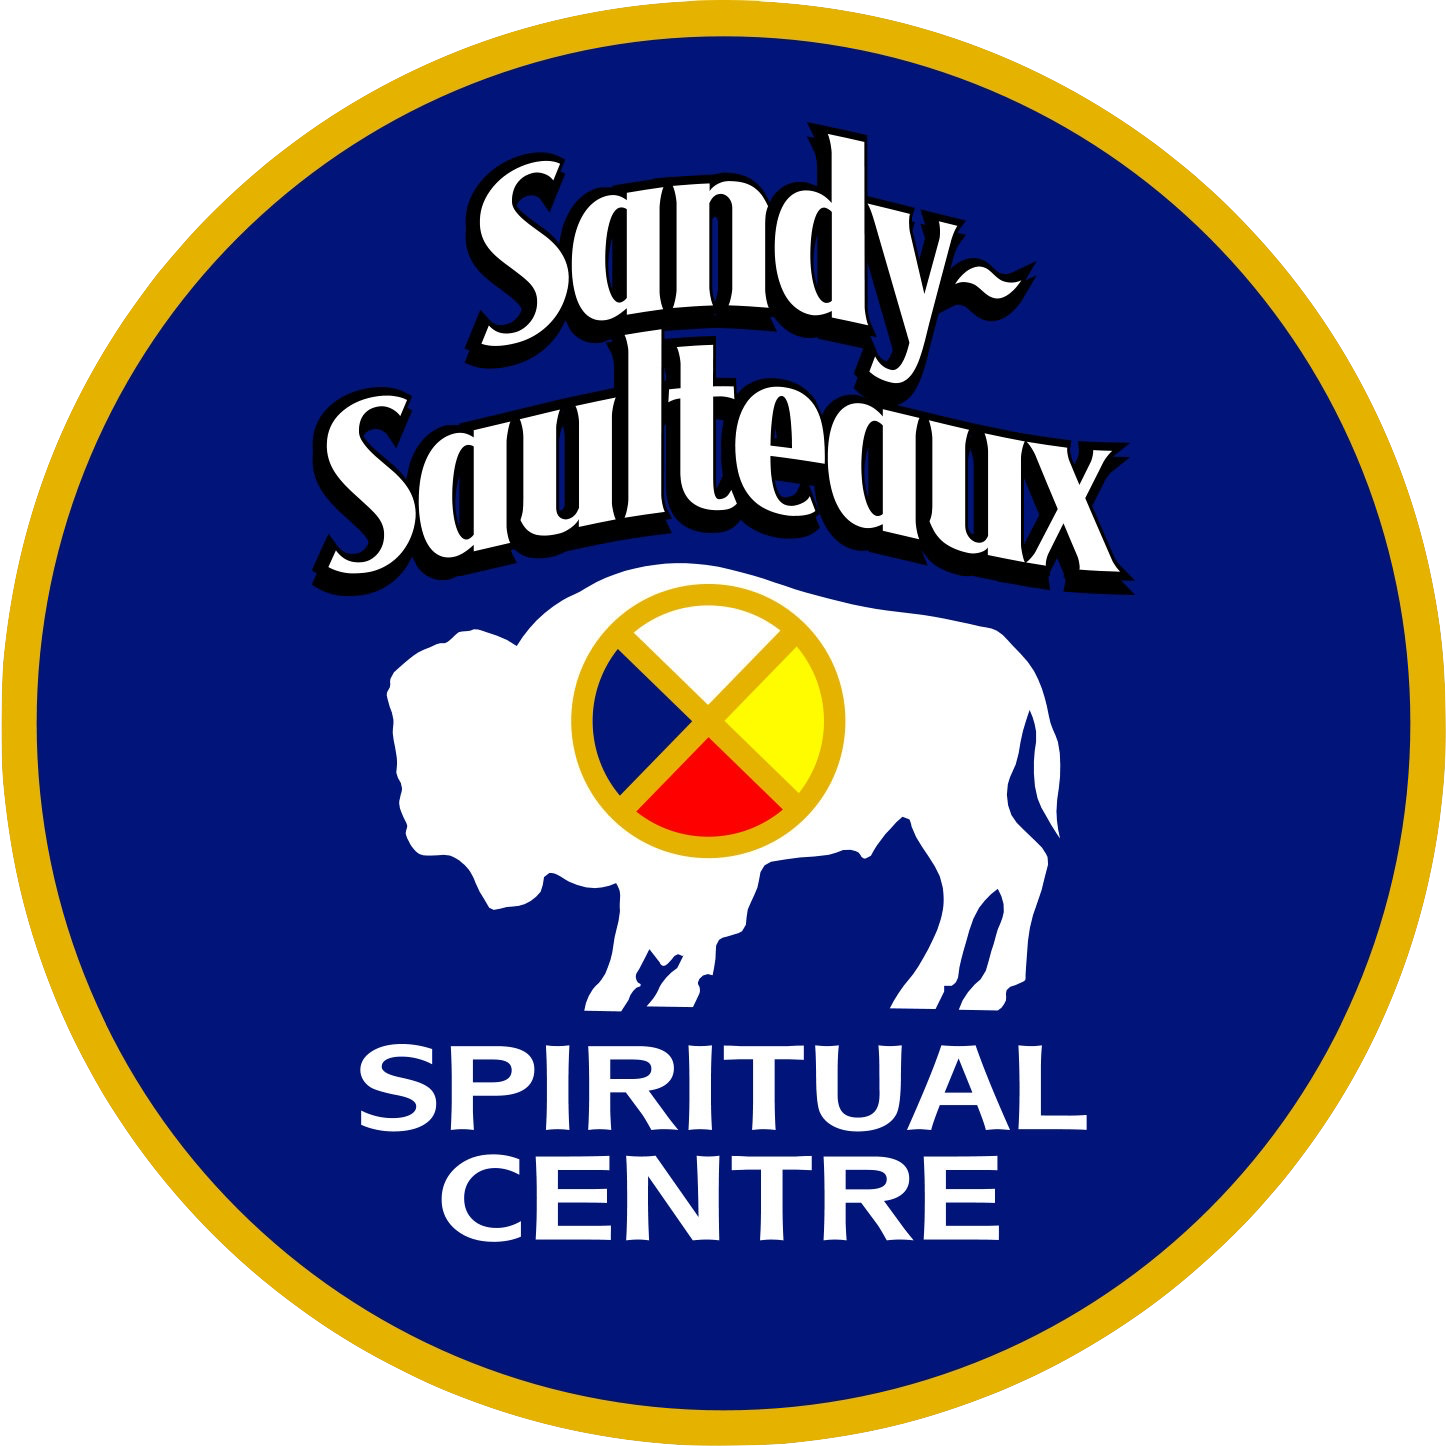 Sandy-saulteaux Spiritual Centre - Foul Pole Sports Clipart (1447x1447), Png Download